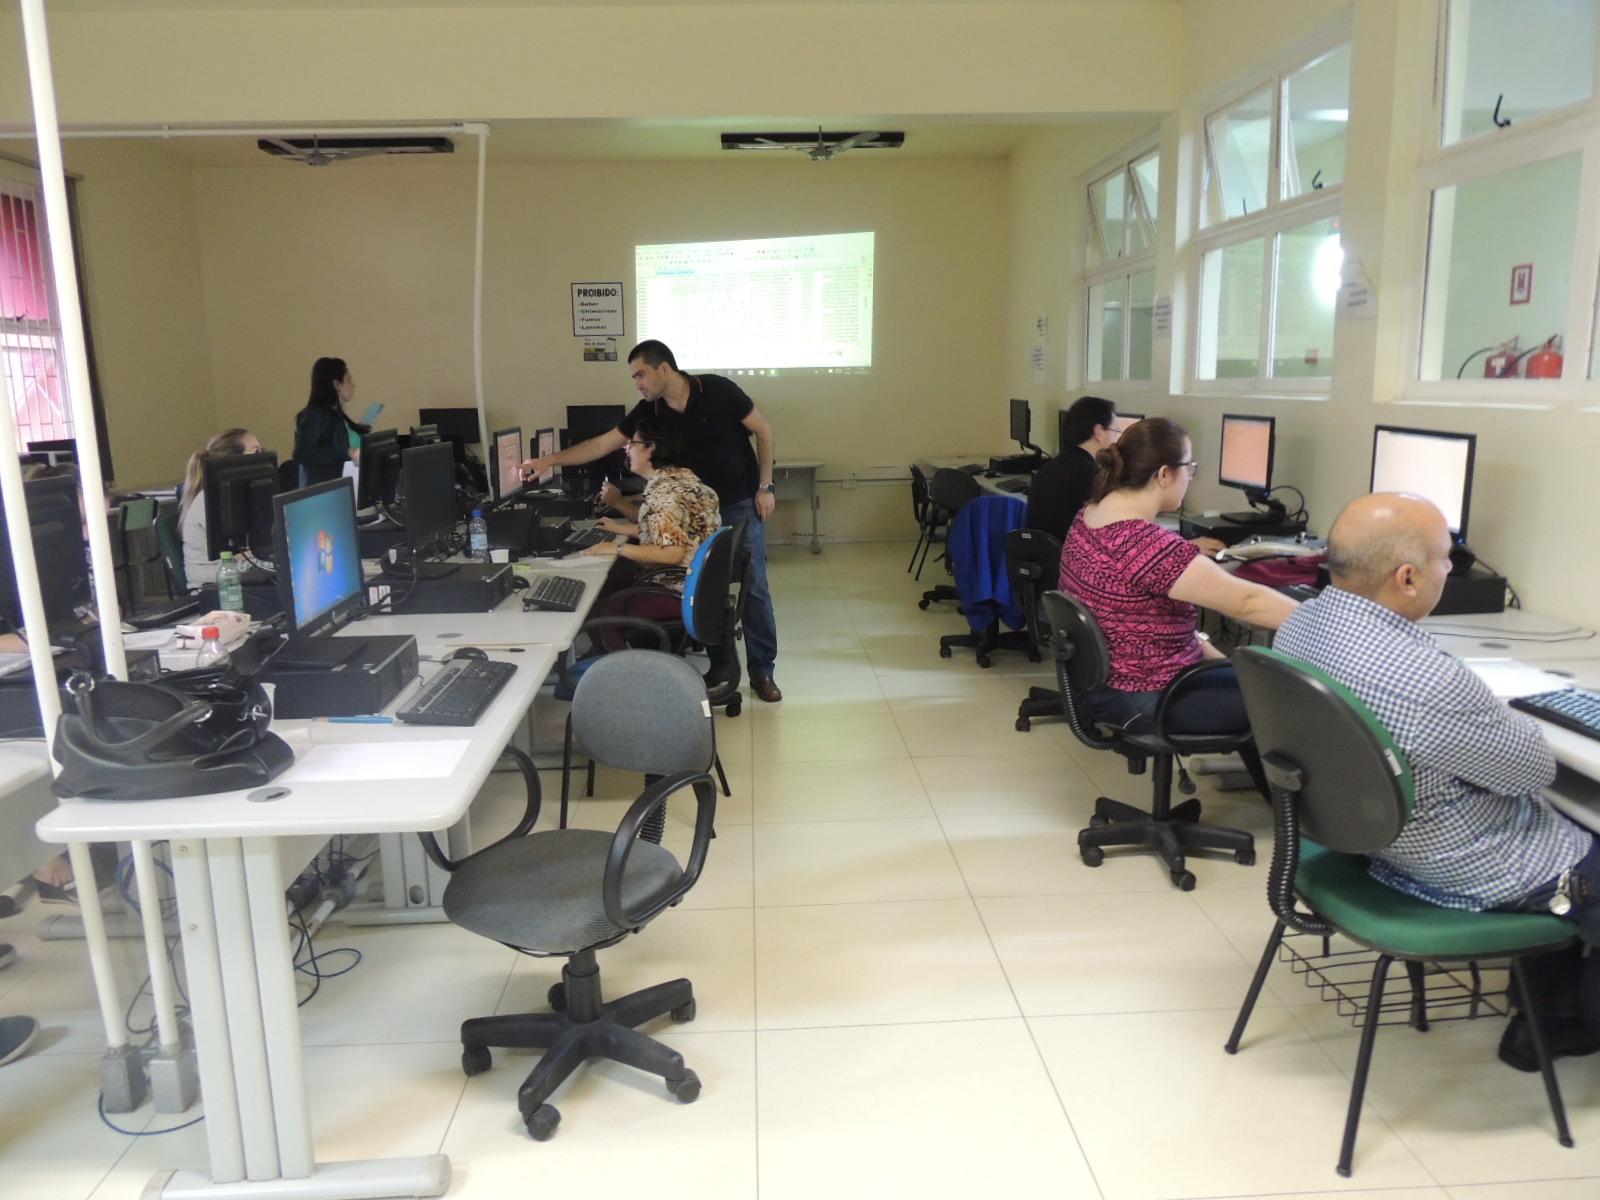 foto mostra uma sala com diversos computadores organizados em estações de trabalho. servidores aparecem sentados trabalhando nessas estações enquanto o instrutor, em pé, passa orientações a uma aluna